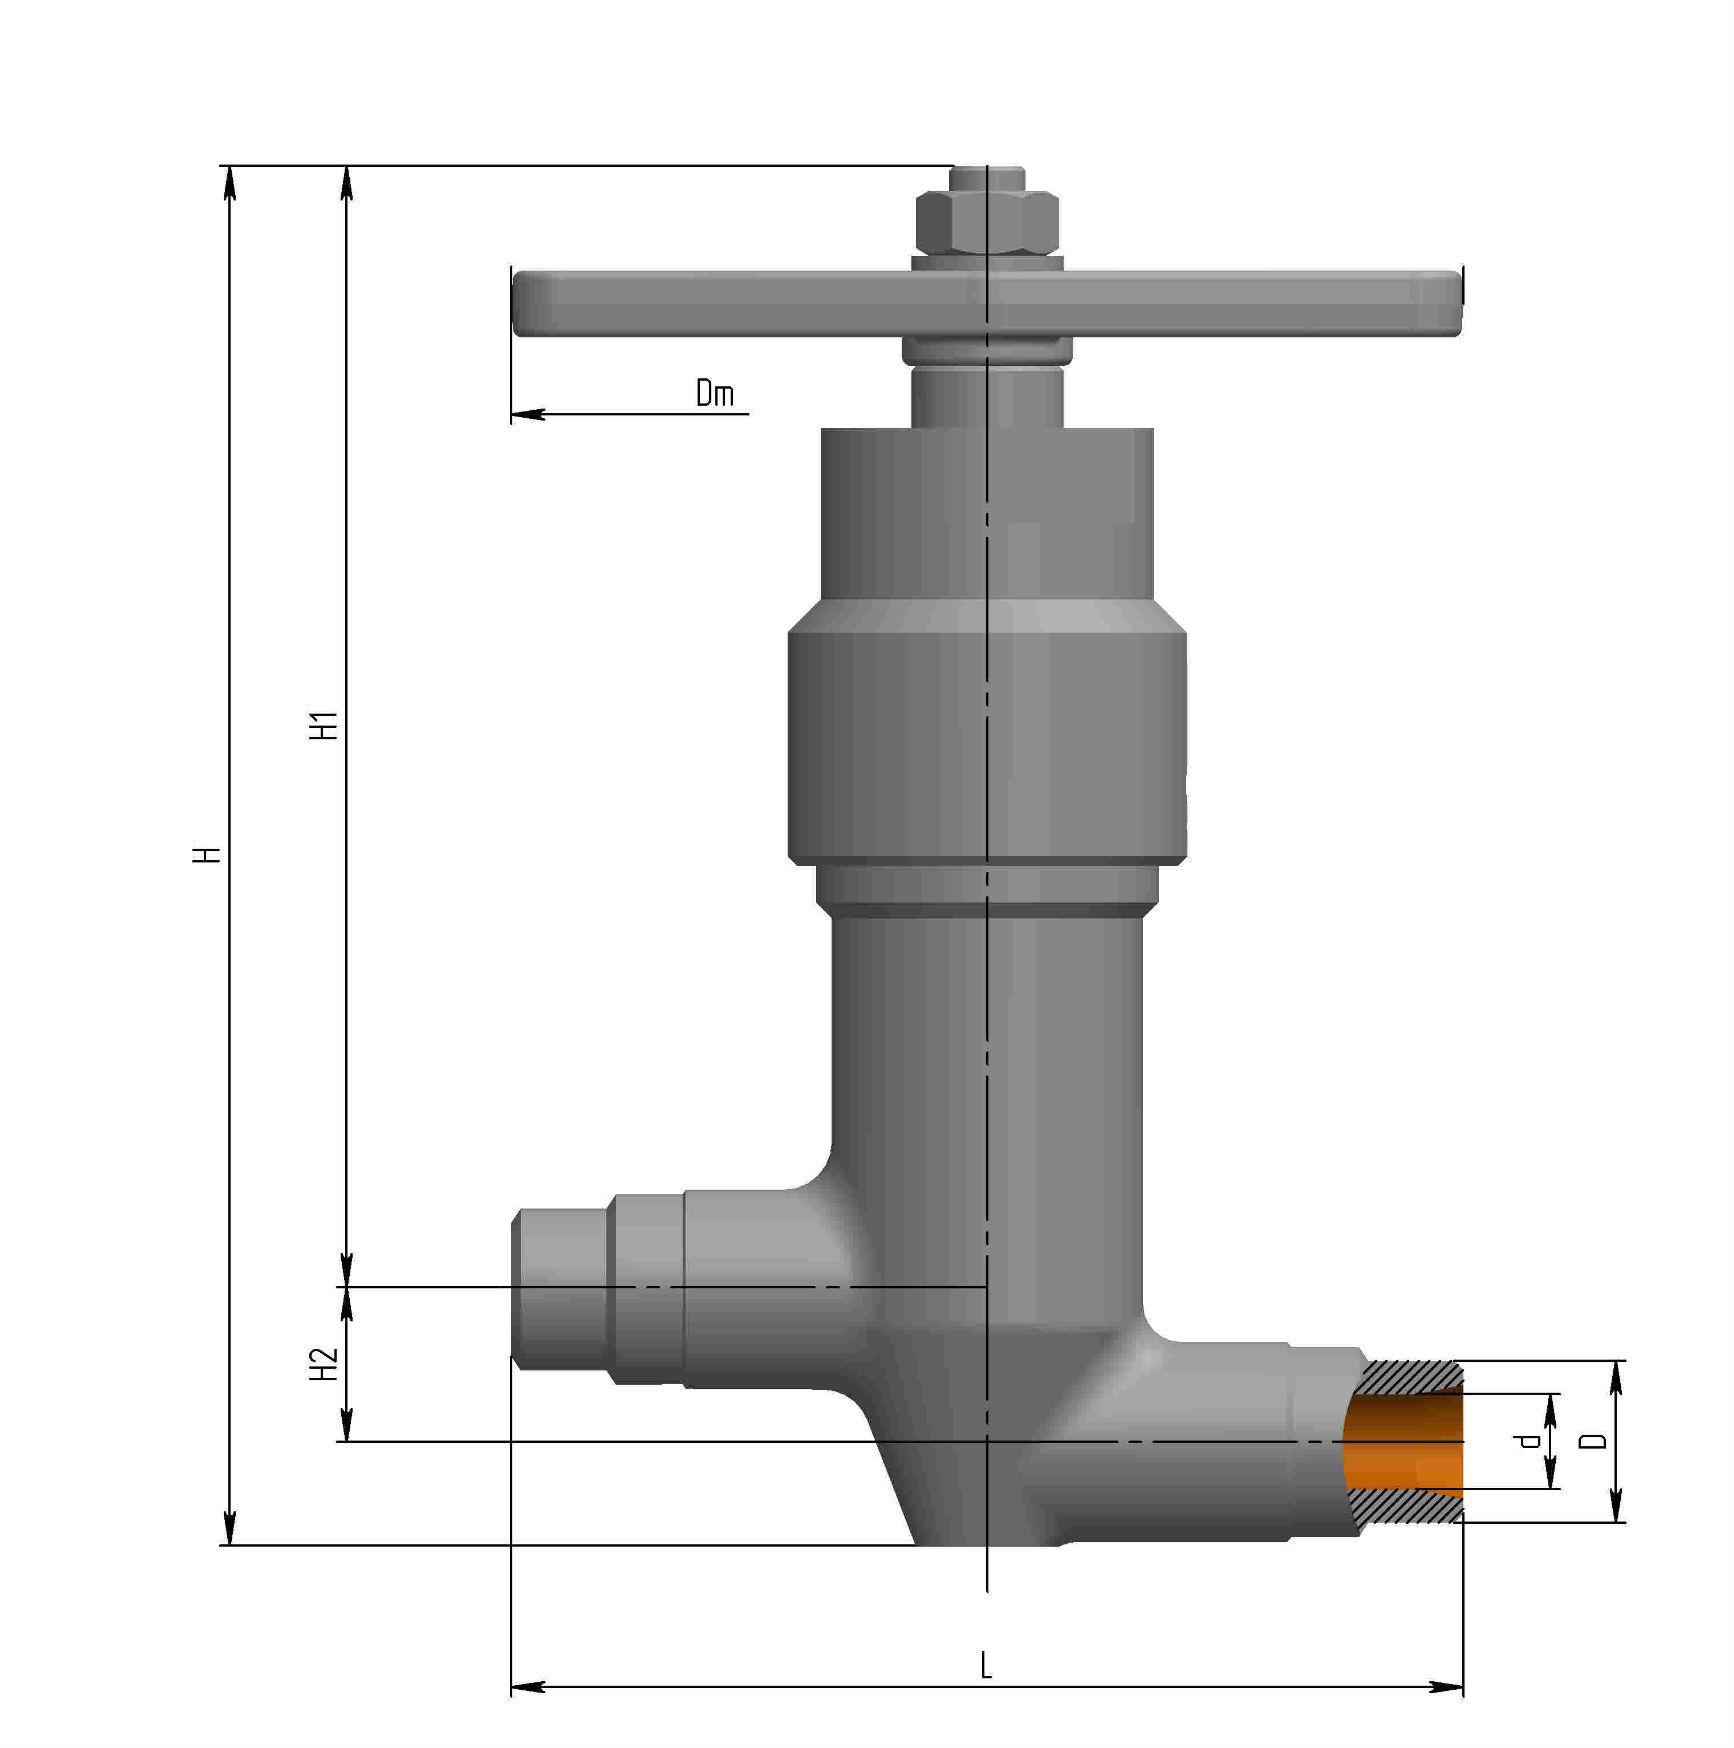 bellows valve  У26161-015М1-04| Picture